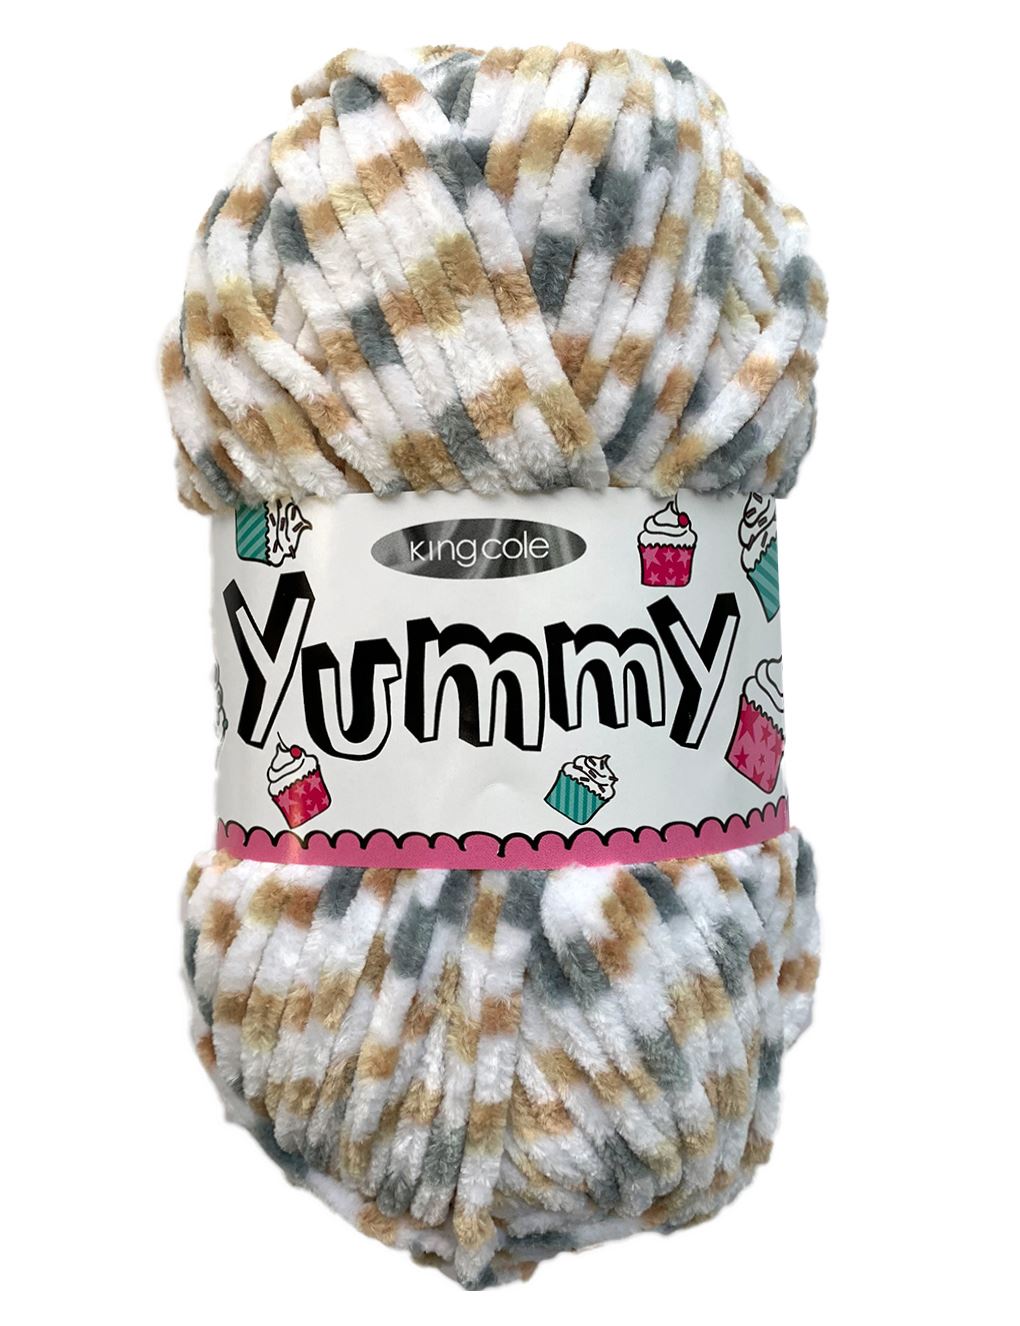 King Cole Yummy Latte (3225) chenille yarn - 100g